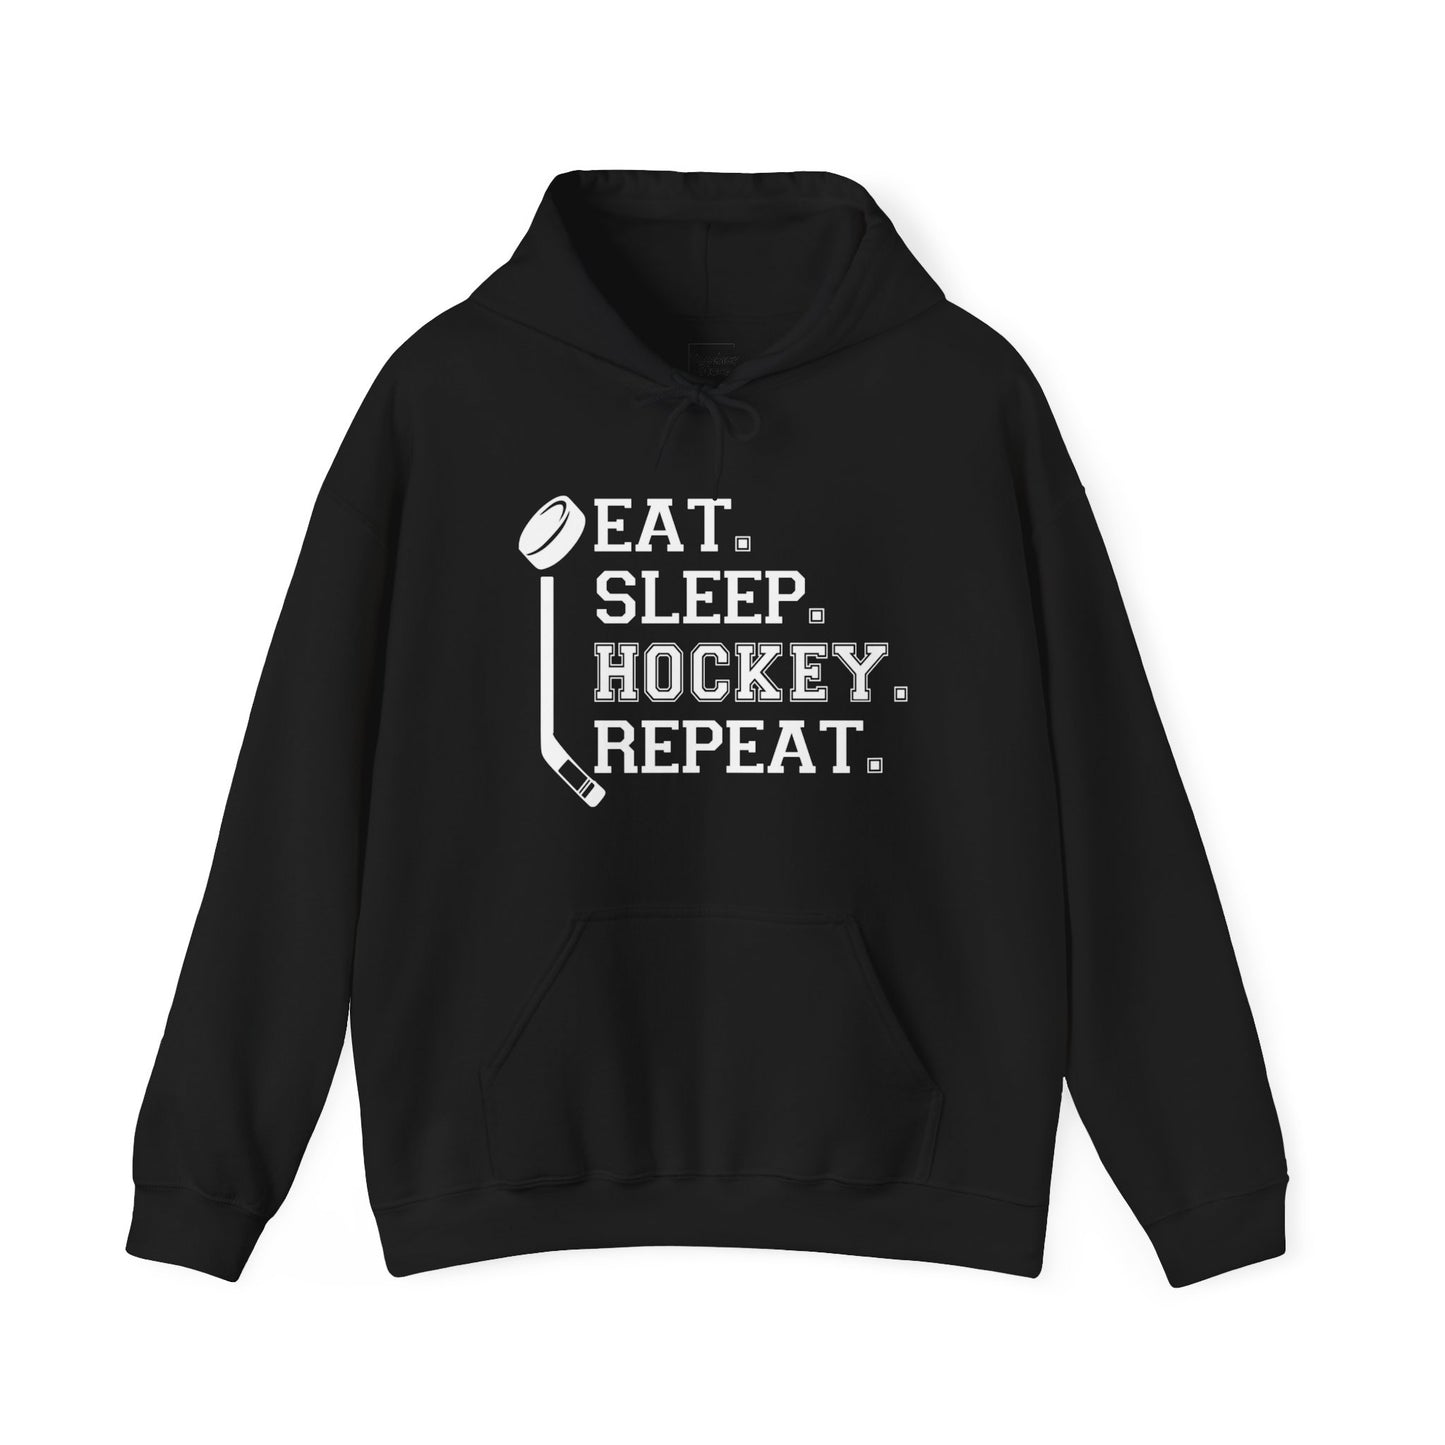 Eat Sleep Hockey Hooded Sweatshirt